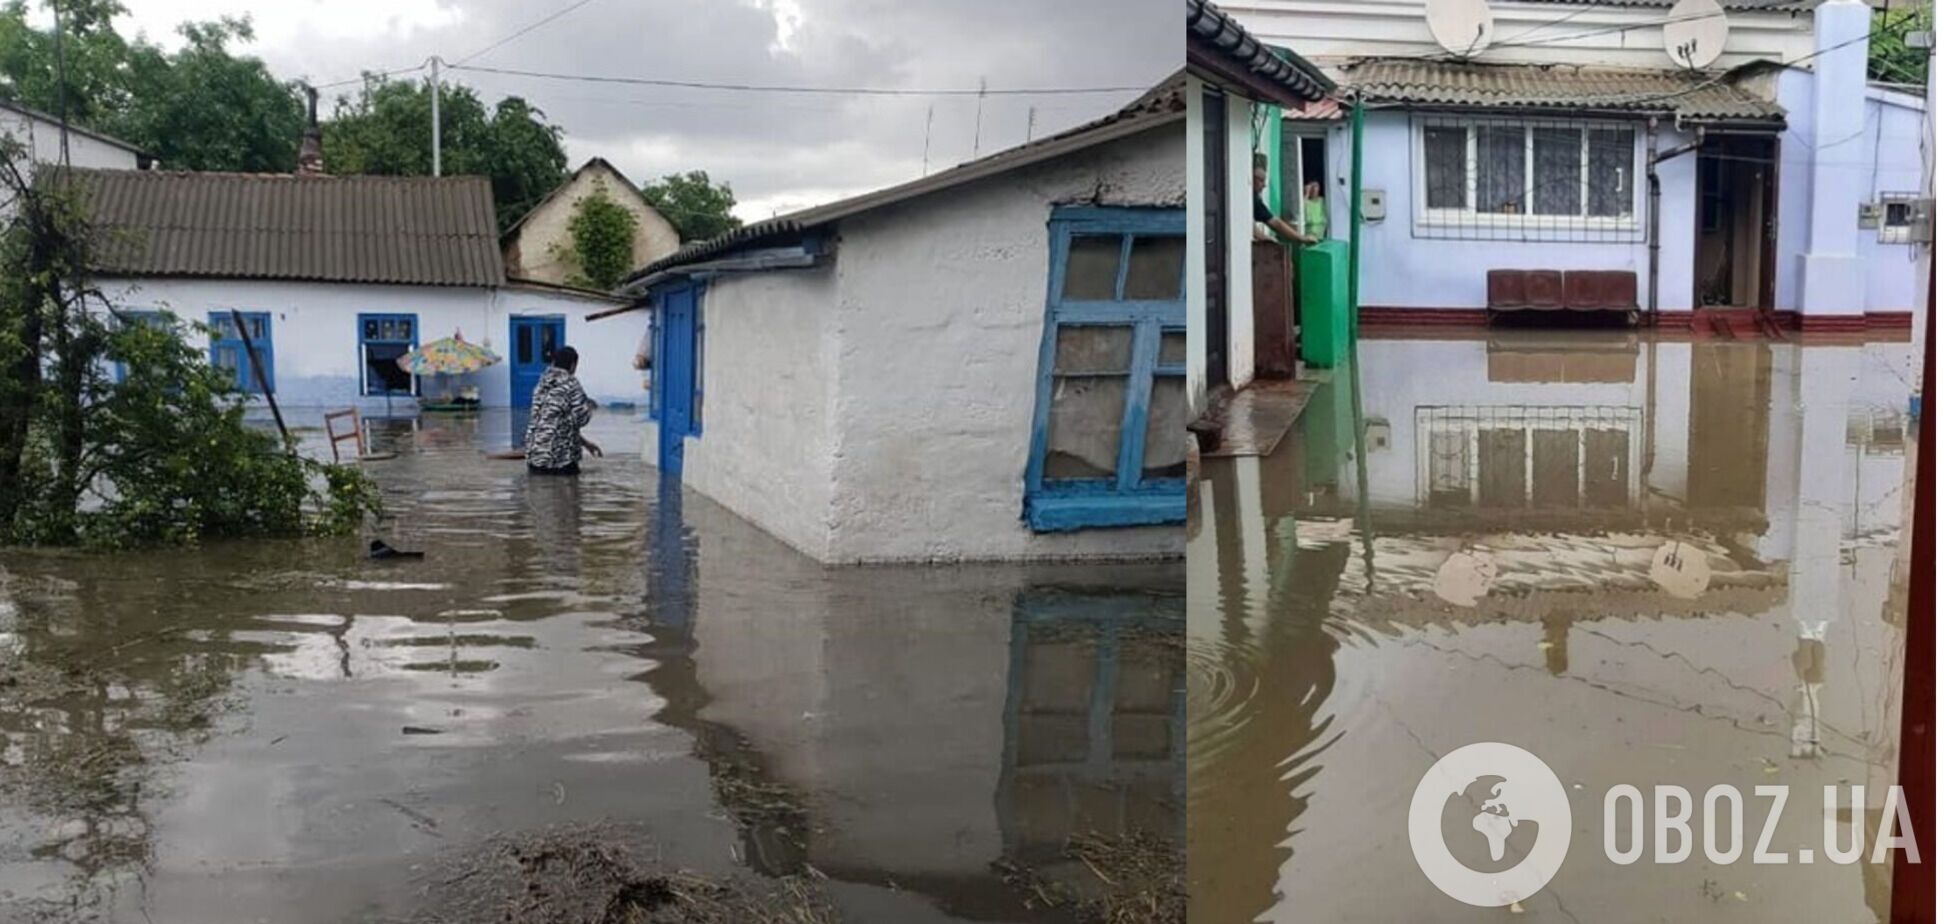 Местные жители делятся в соцсетях последствиями потопа